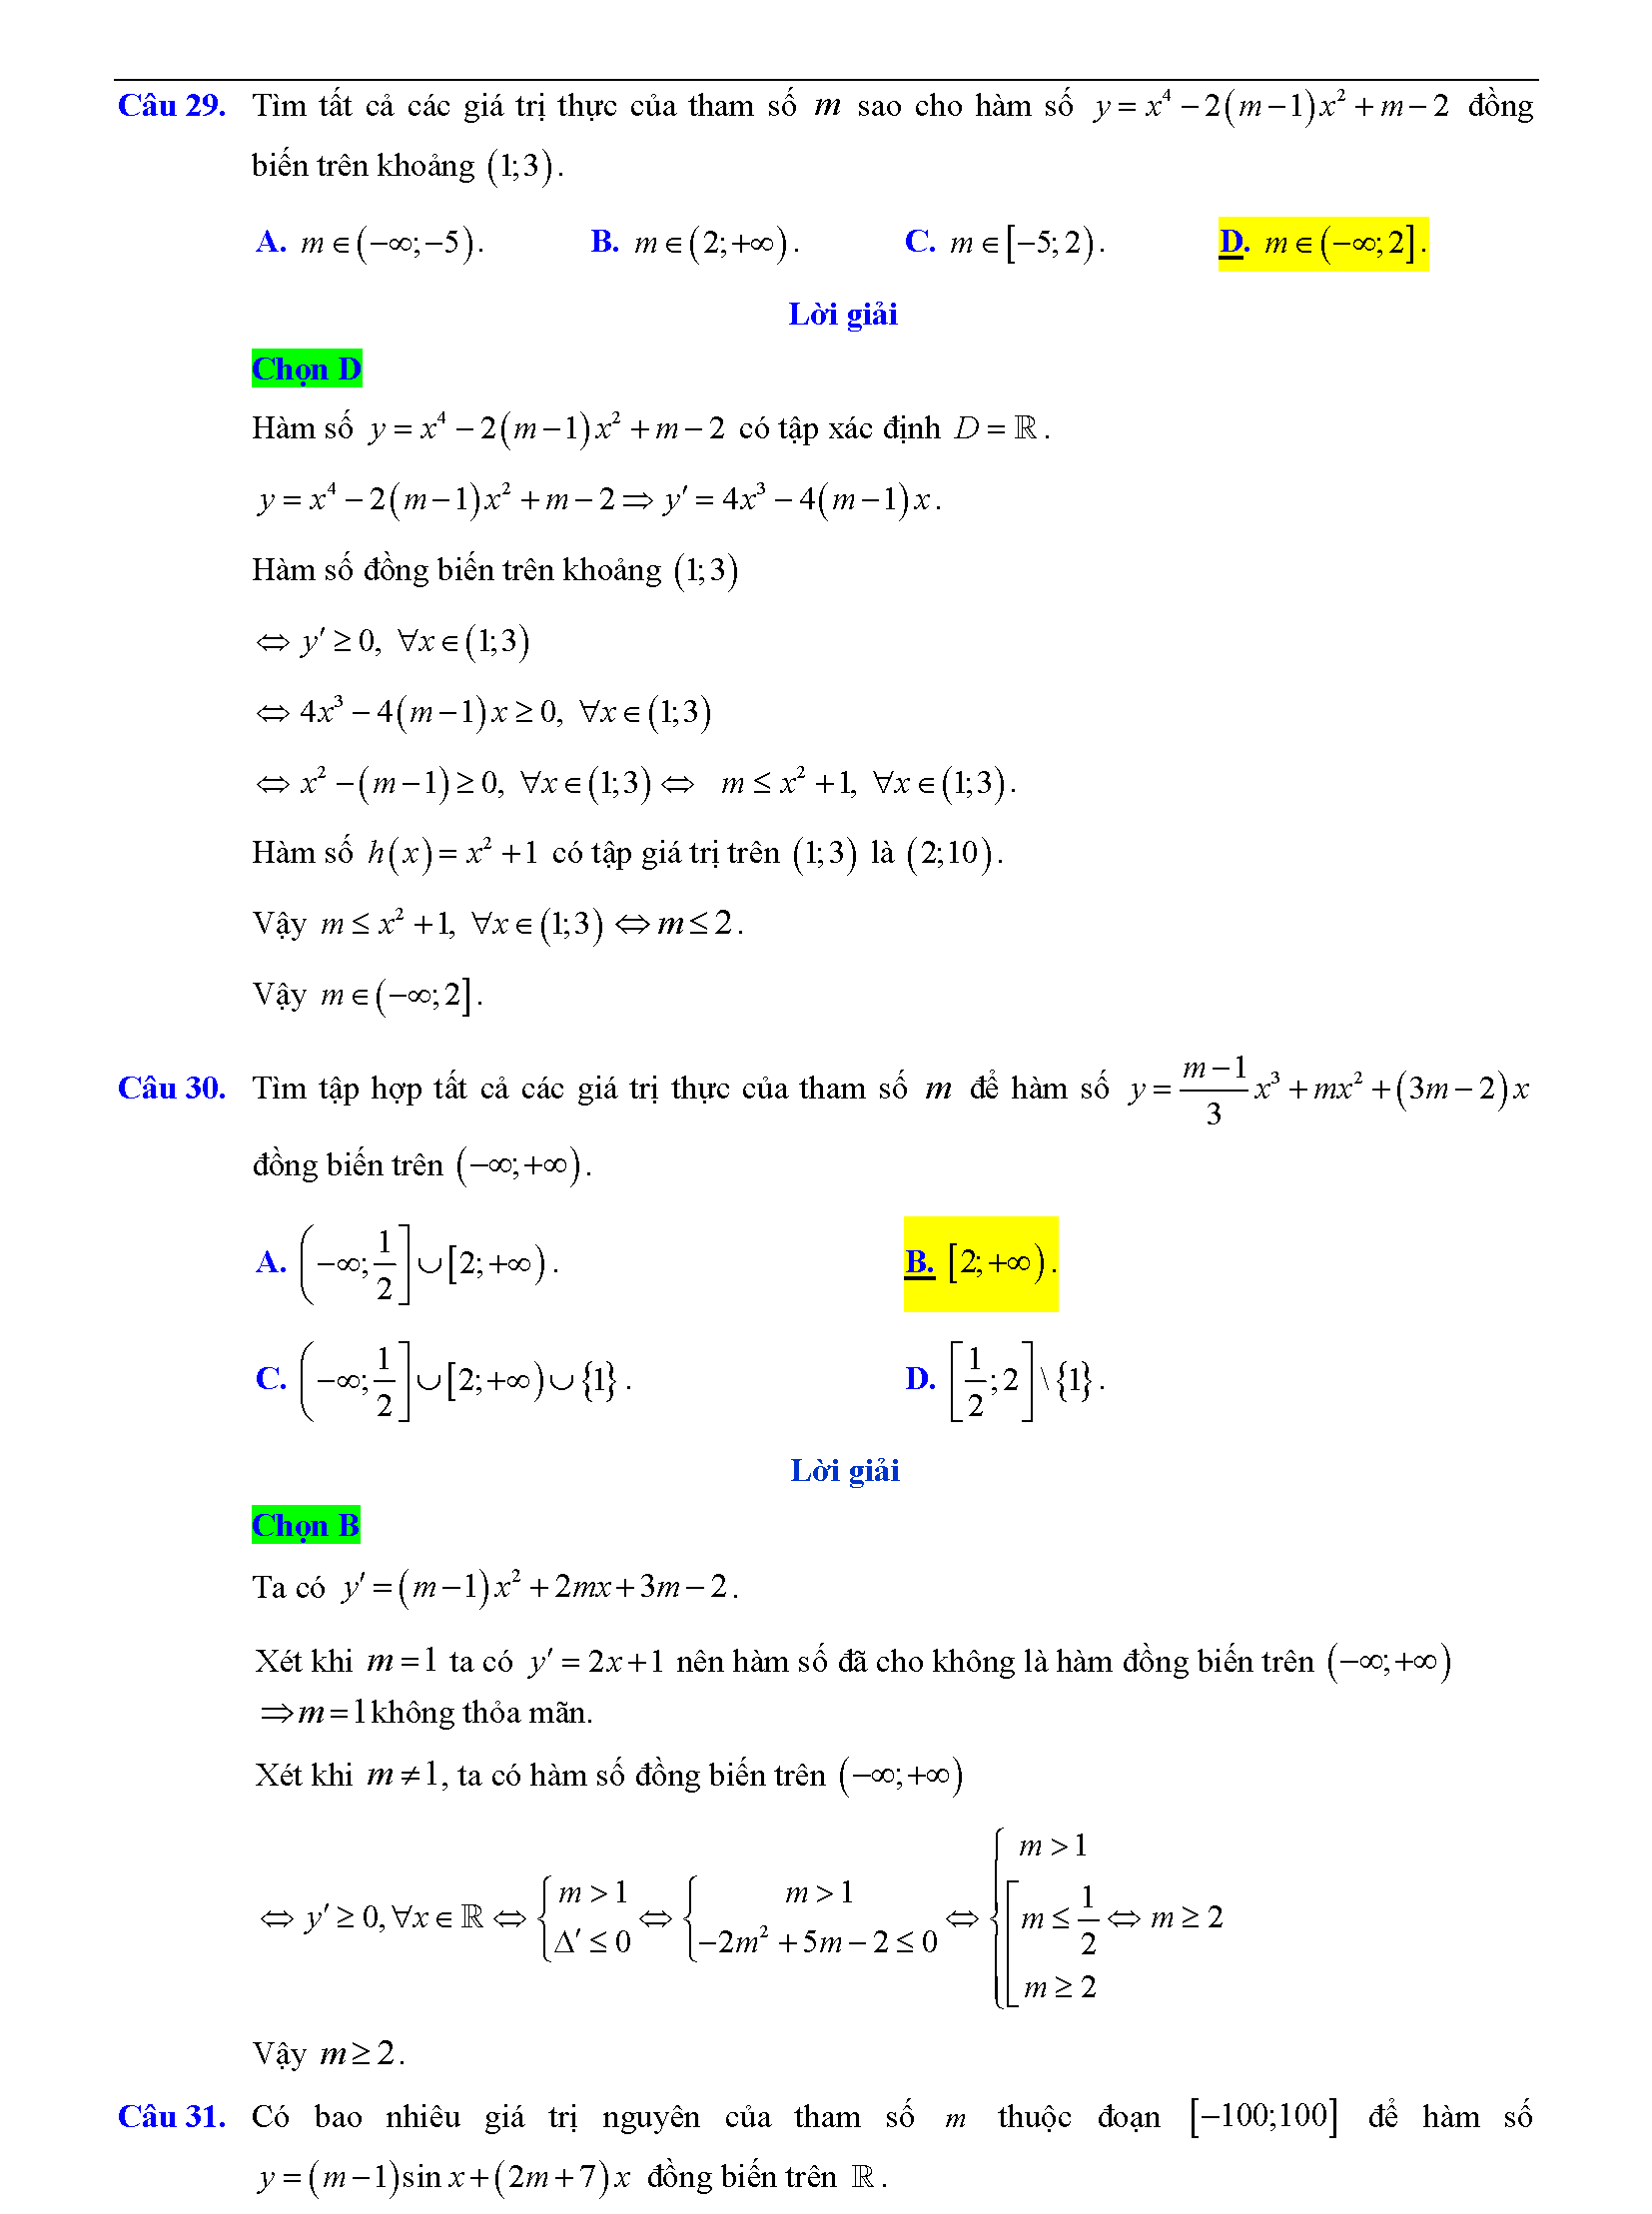 Trắc nghiệm tìm m để hàm số đơn điệu 19